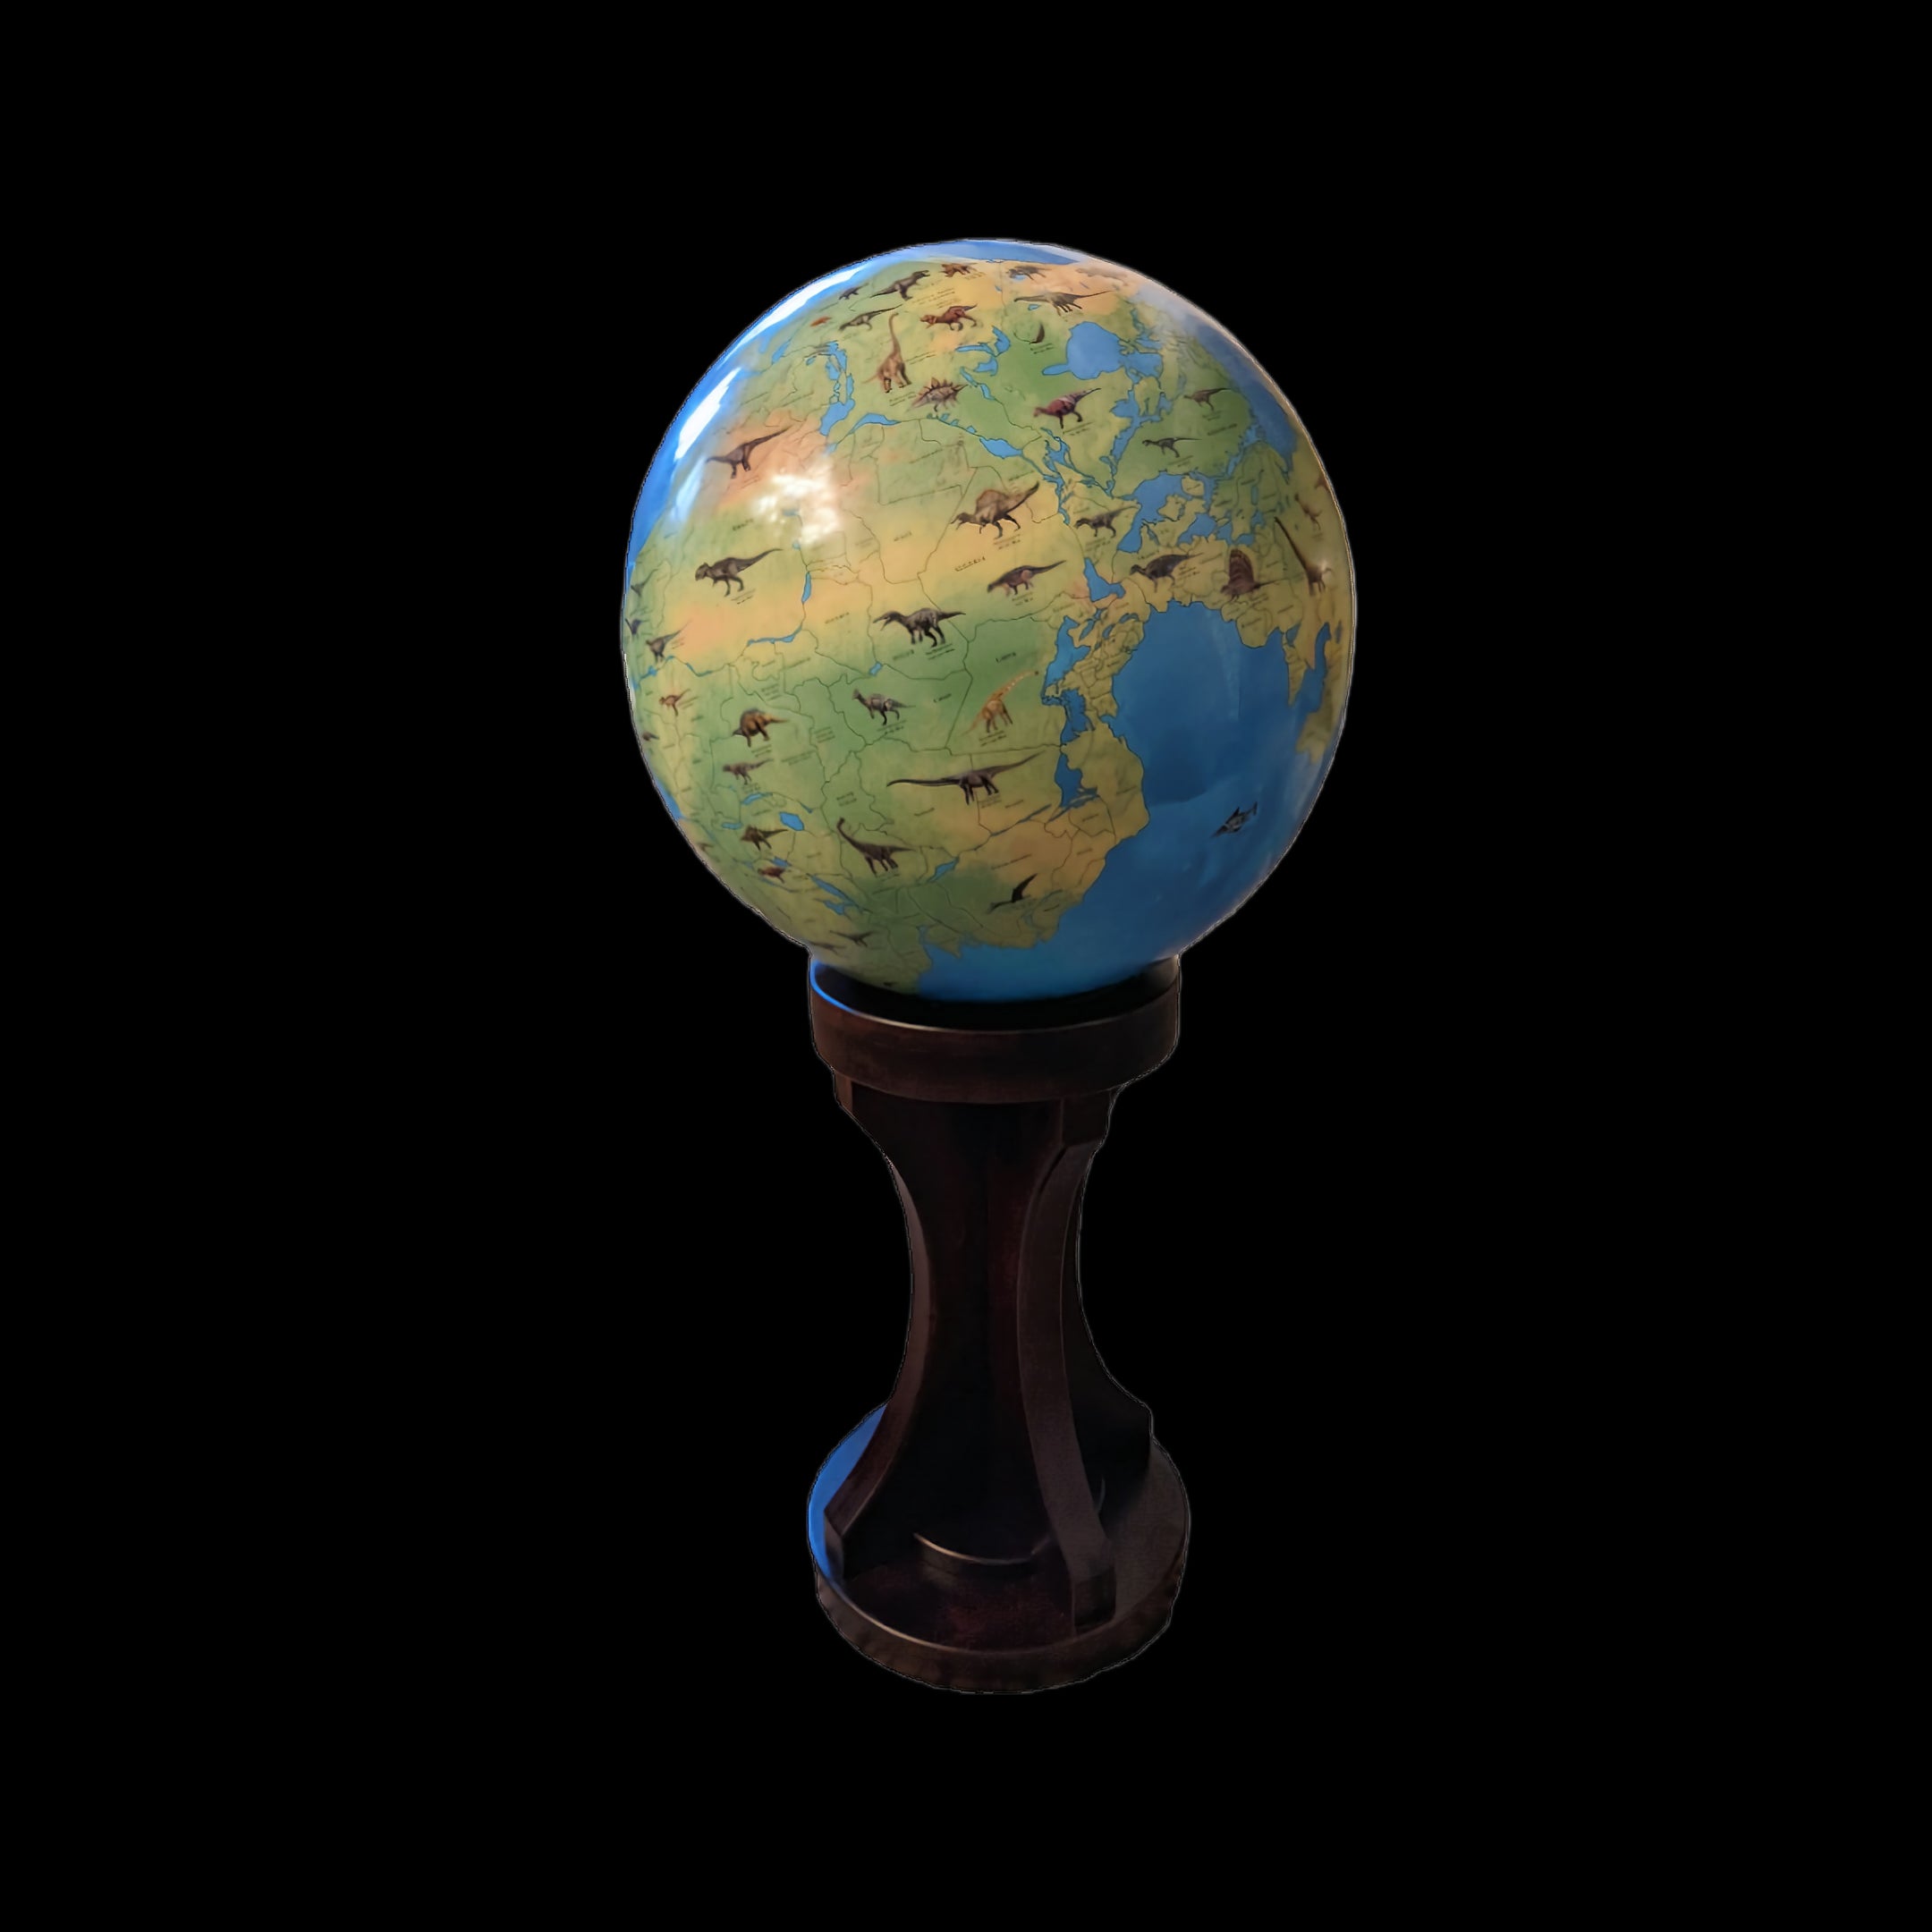 The Dinosaur Globe - Earth 200 million years ago